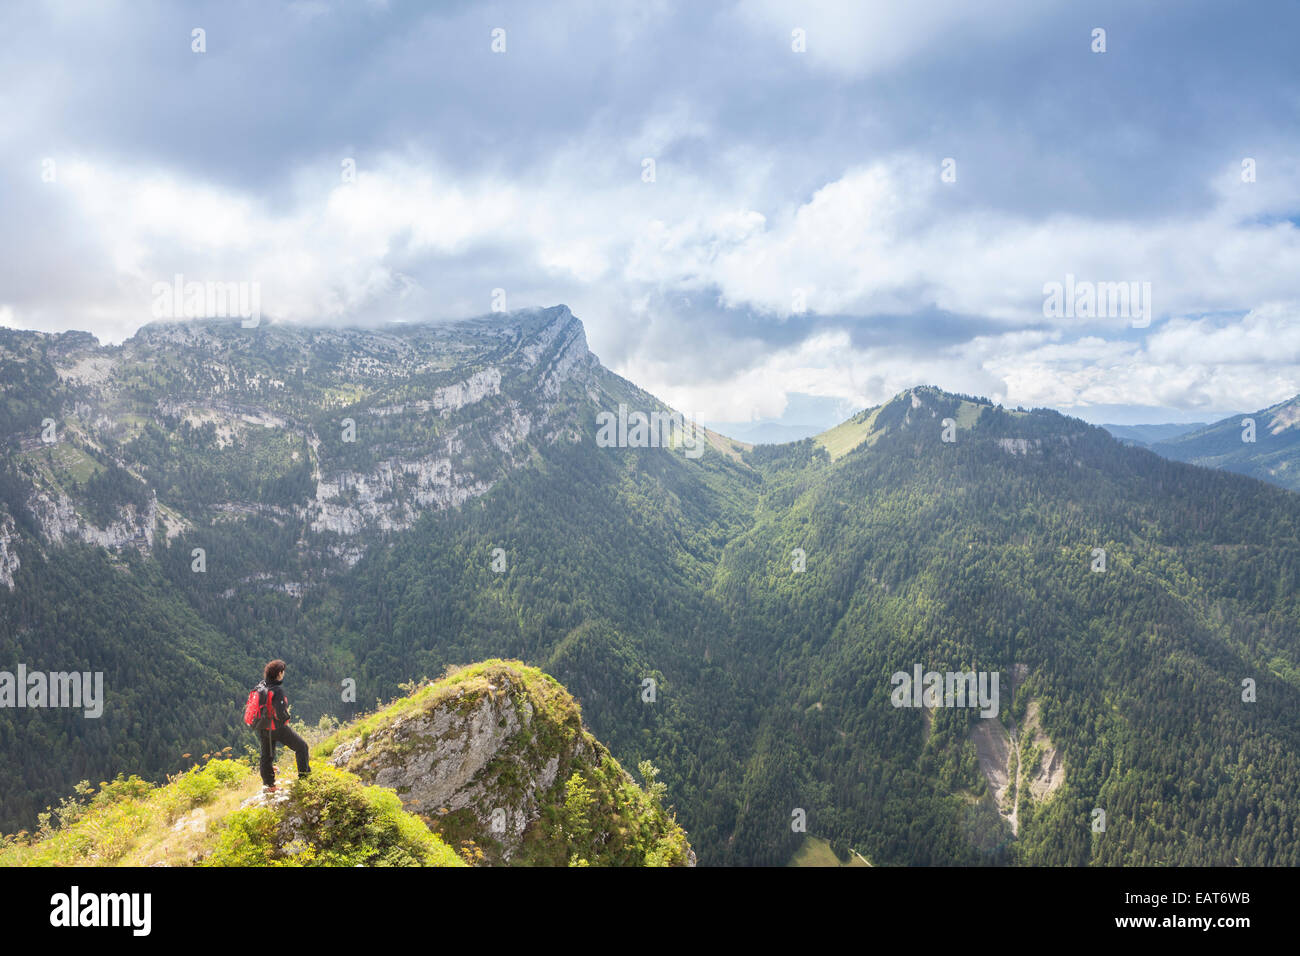 View of the Chamechaude and Dent de Crolles peaks, Parc Naturel de la Chartreuse, Isere, Rhône-Alpes, France Stock Photo